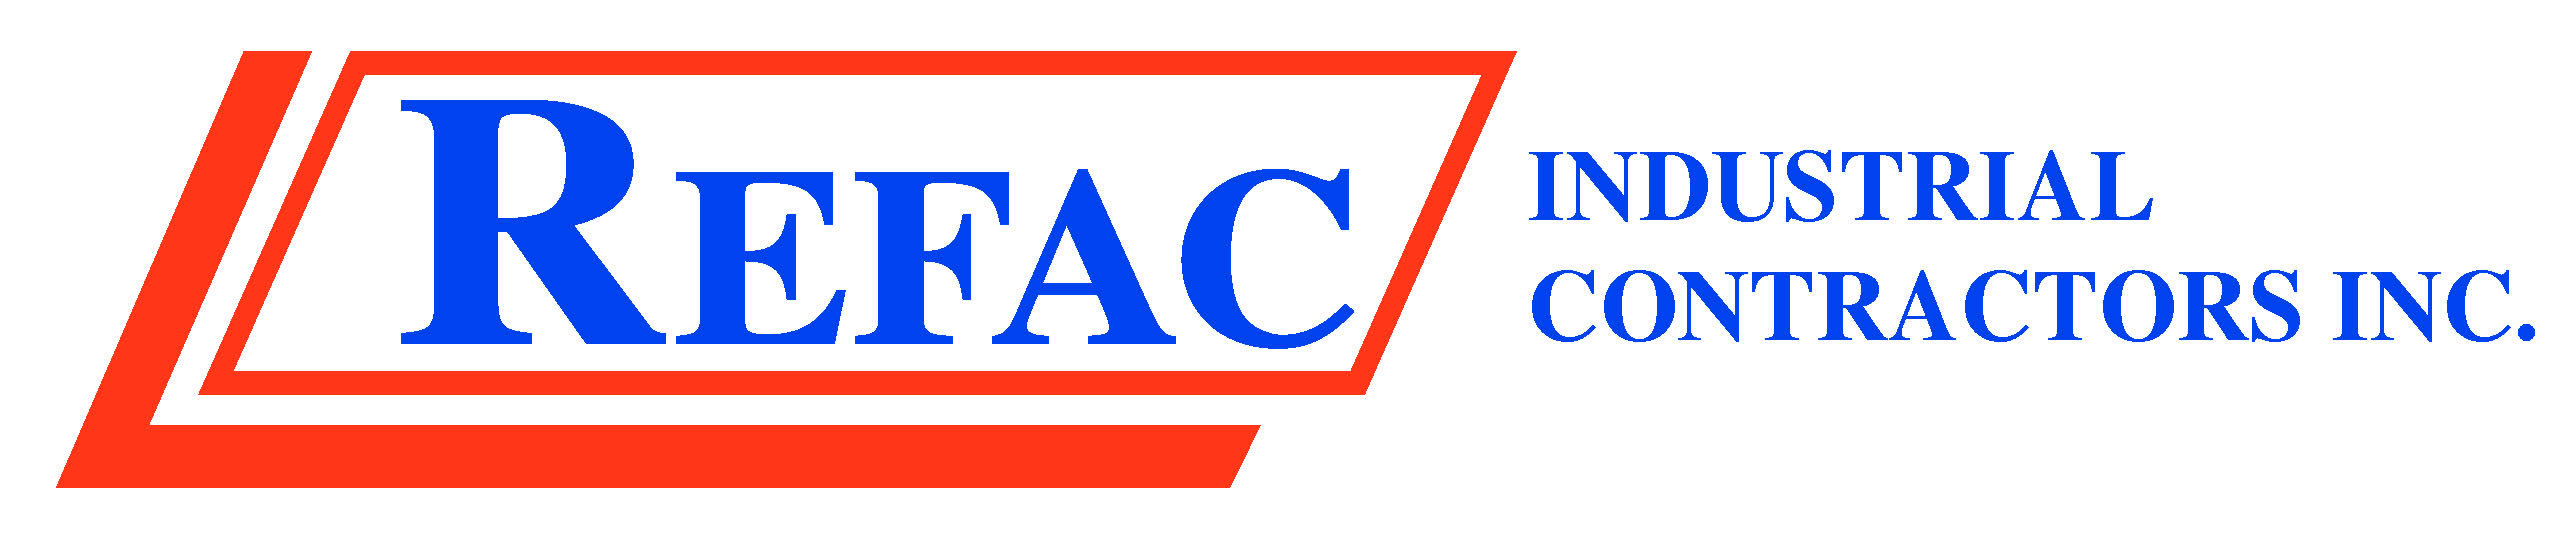 REFAC Industrial Contractors Inc.